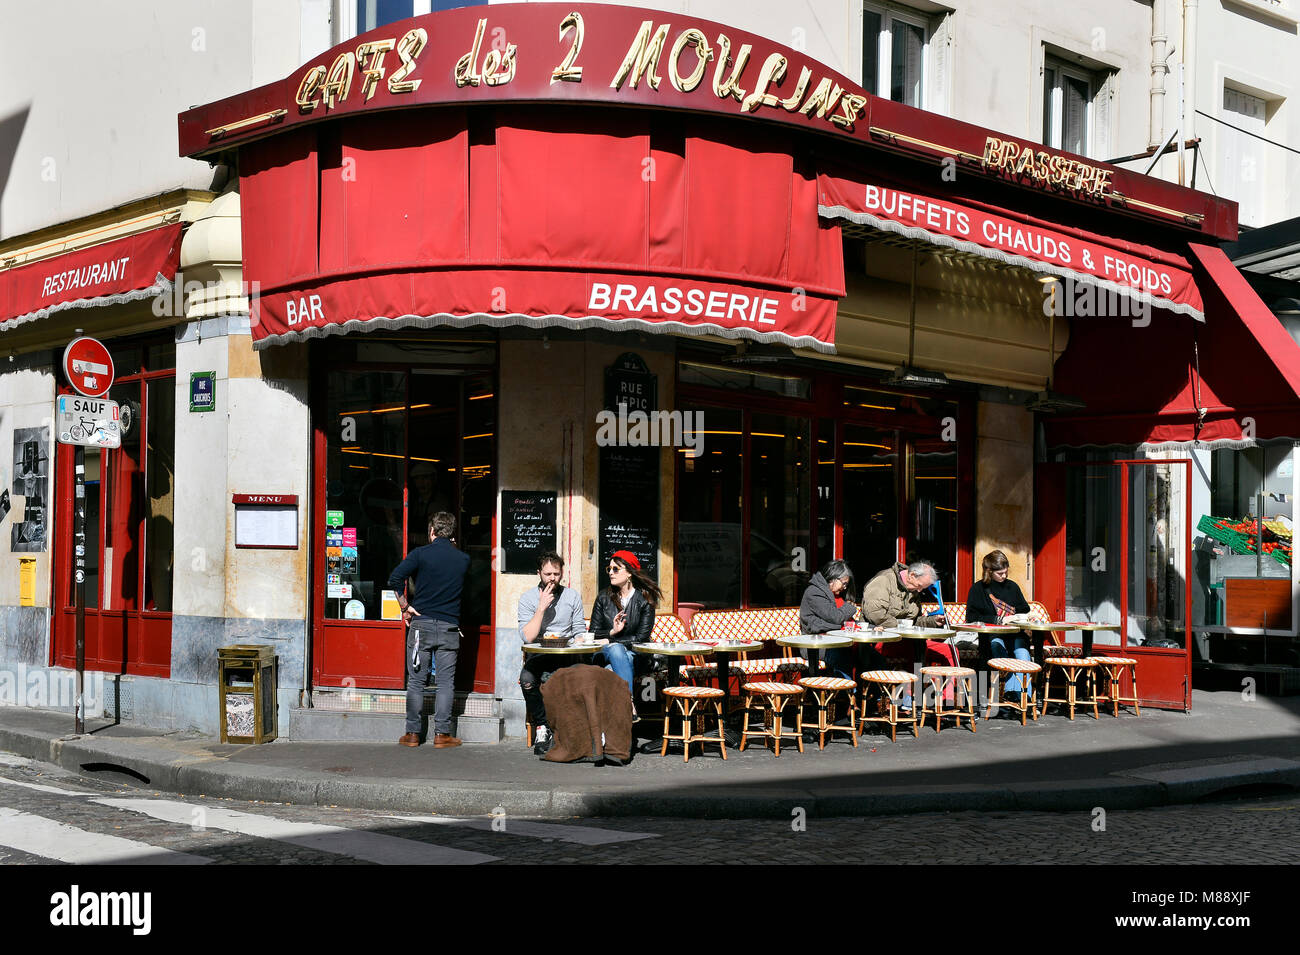 Café des 2 moulins, rue Lepic, Montmartre, Paris, France Banque D'Images